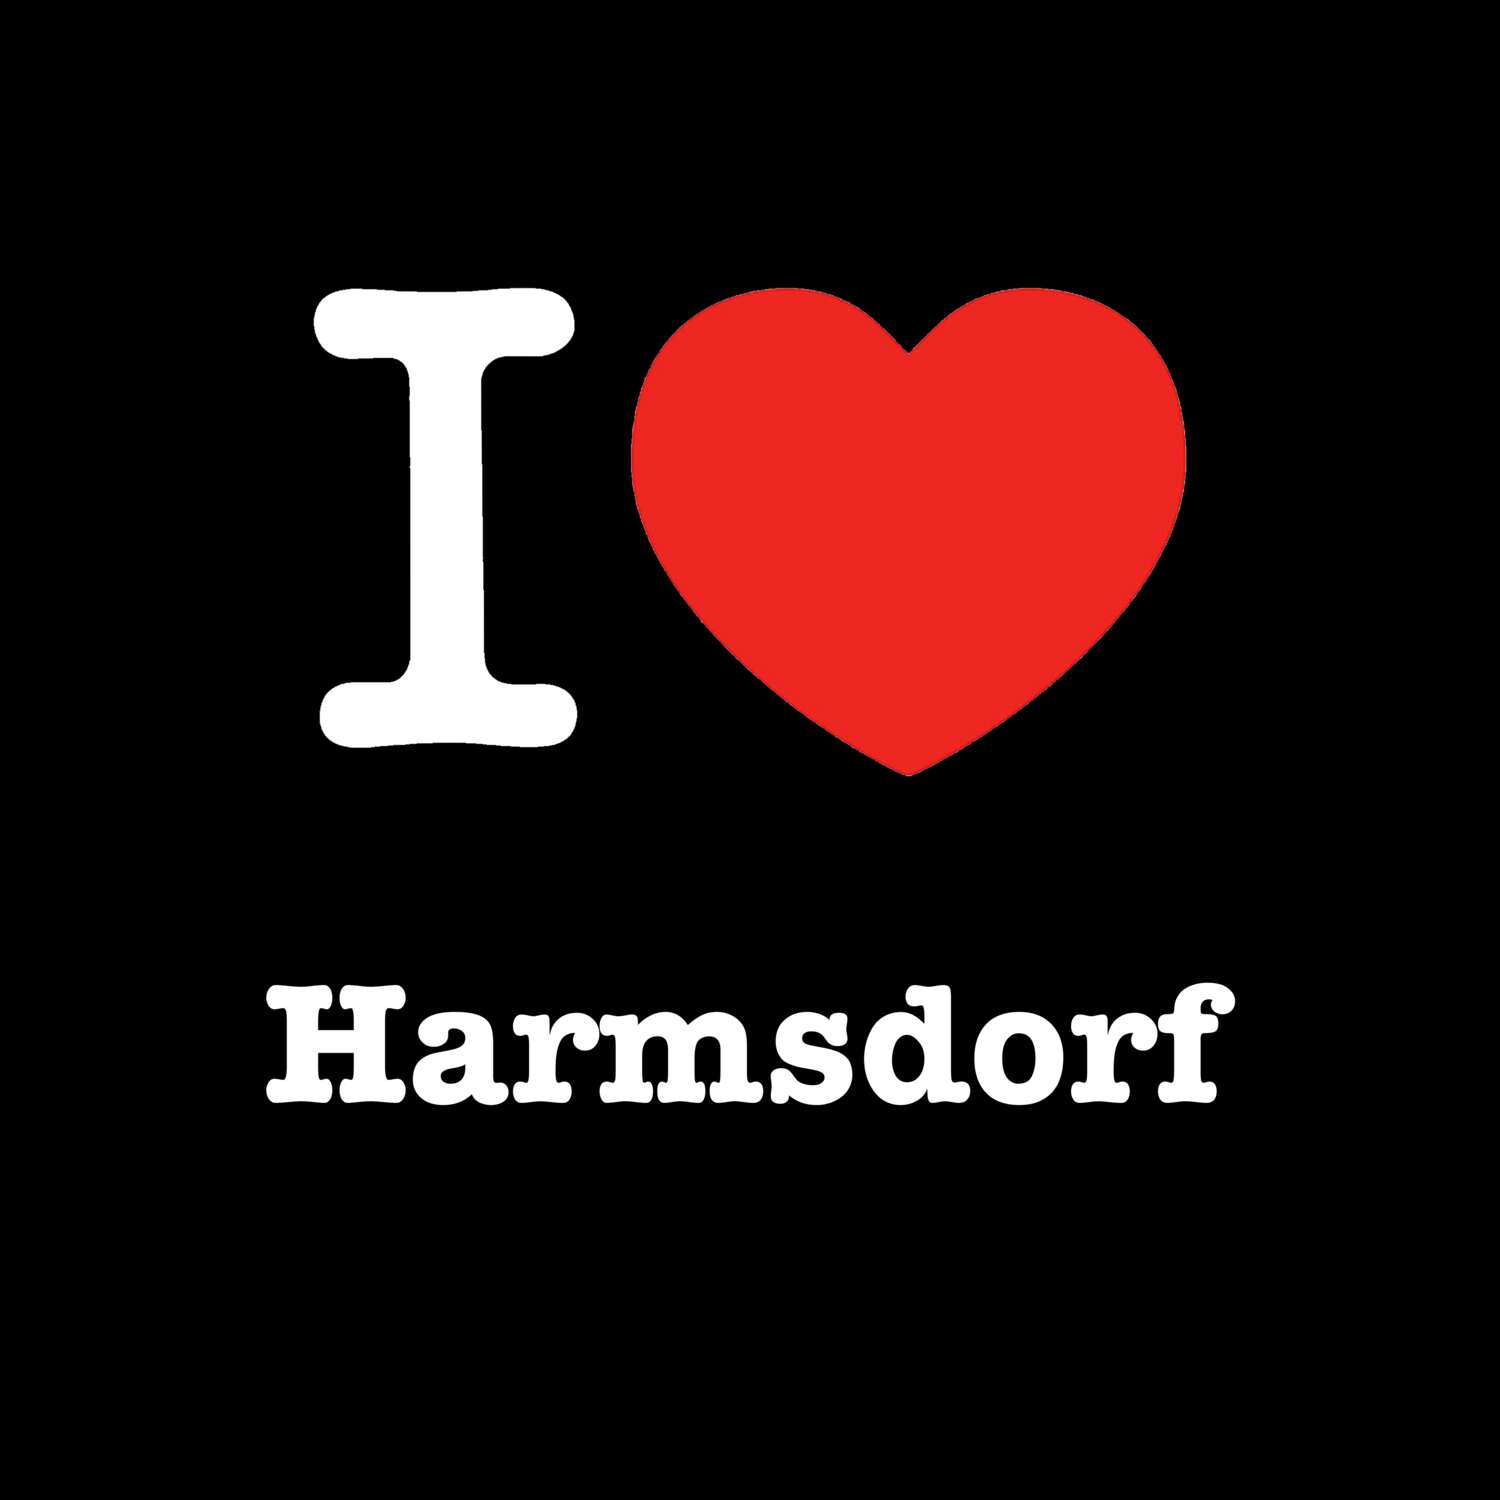 Harmsdorf T-Shirt »I love«